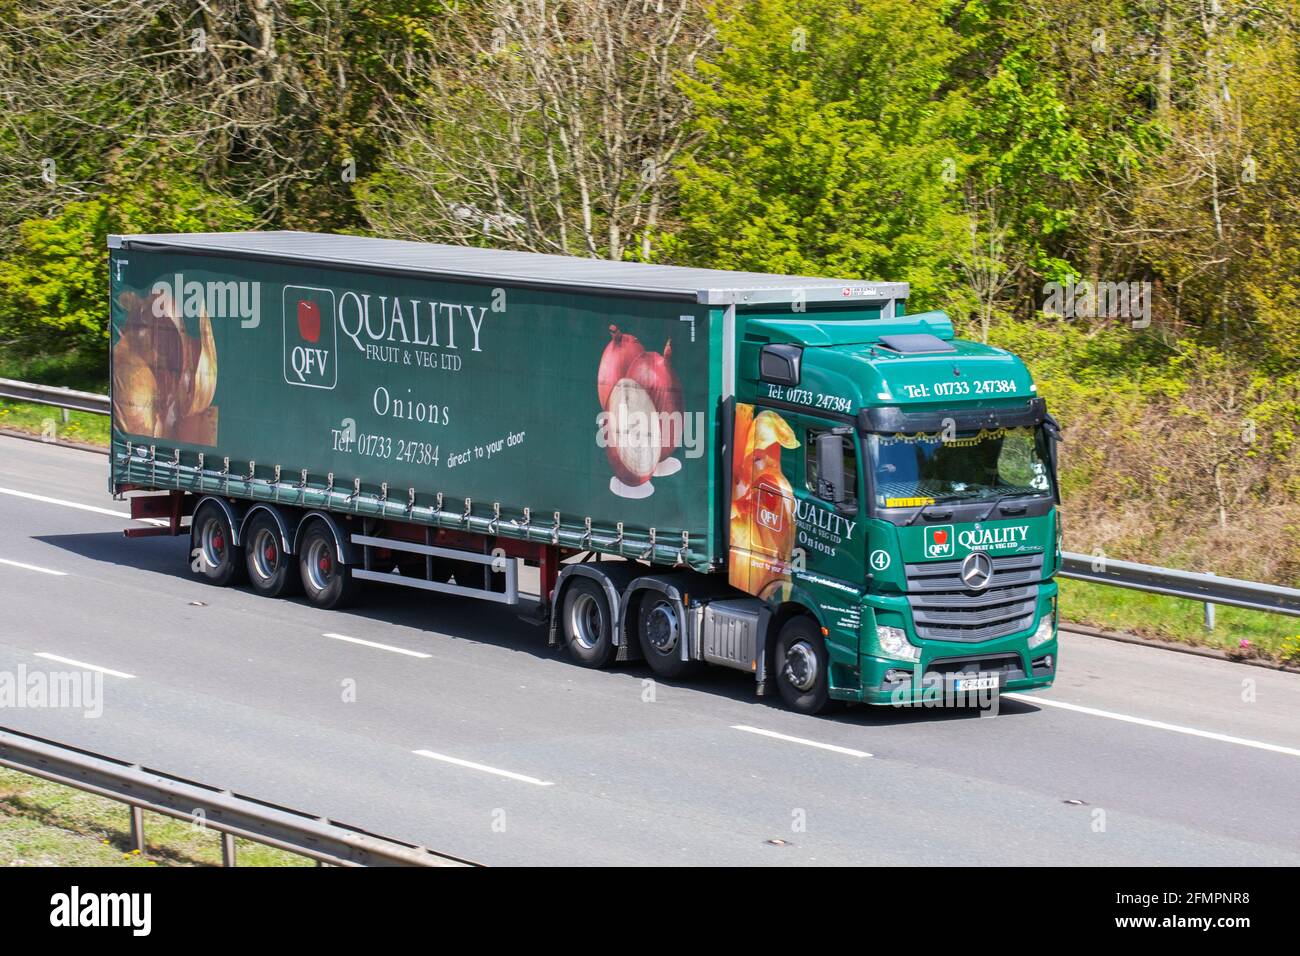 QFV Quality fruit & Veg Ltd ; chariots de transport, camion, véhicules lourds, transport, camion alimentaire, Porte-cargaison de légumes, véhicule Mercedes Benz, industrie européenne du transport commercial HGV, M6 à Manchester, Royaume-Uni Banque D'Images